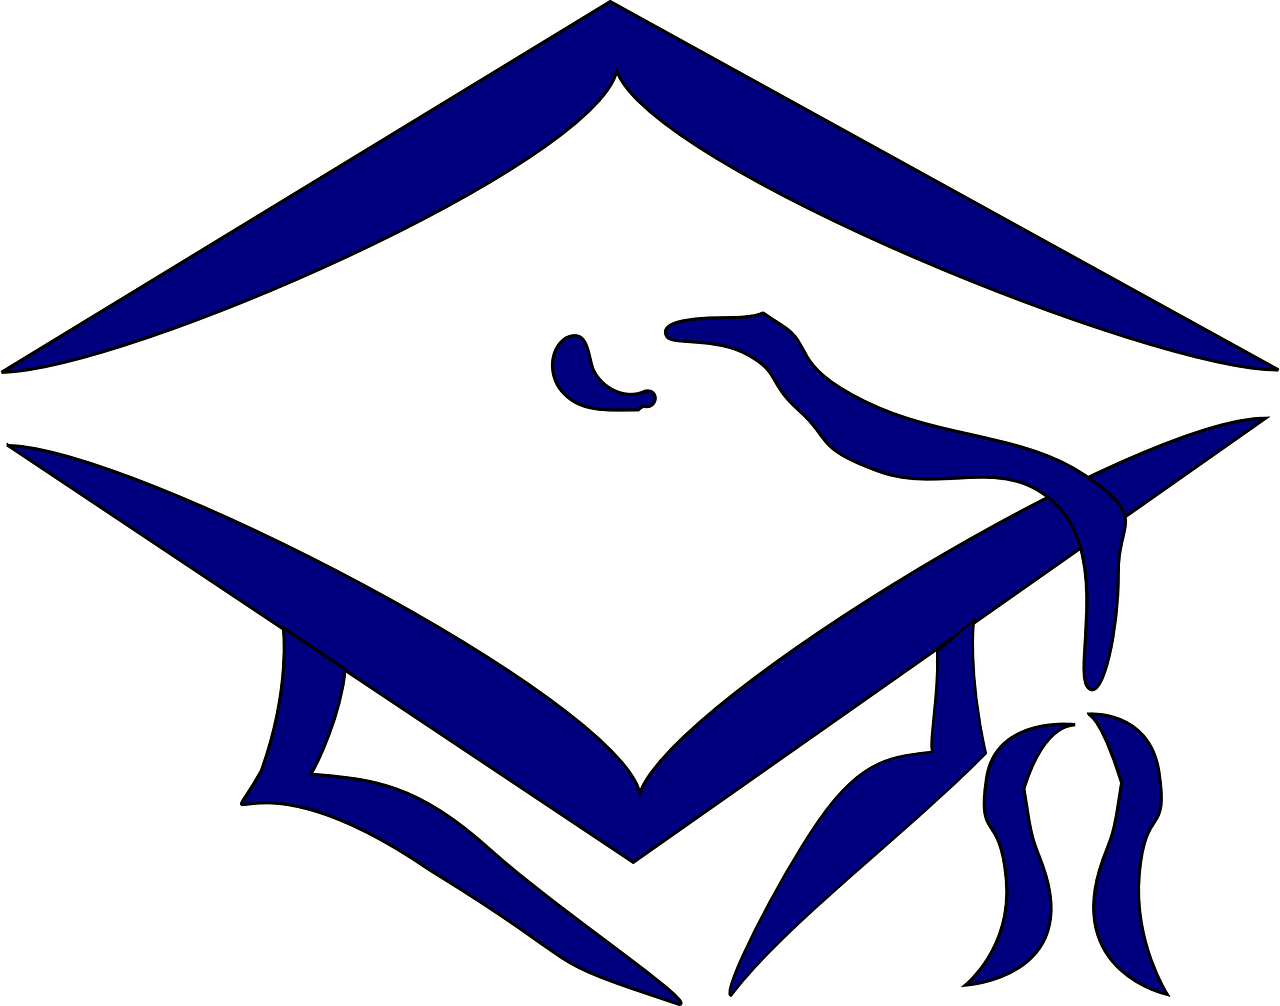 Graduation Gold Cliparts - Transparent Background Graduation Cap Clip Art (1280x1006)